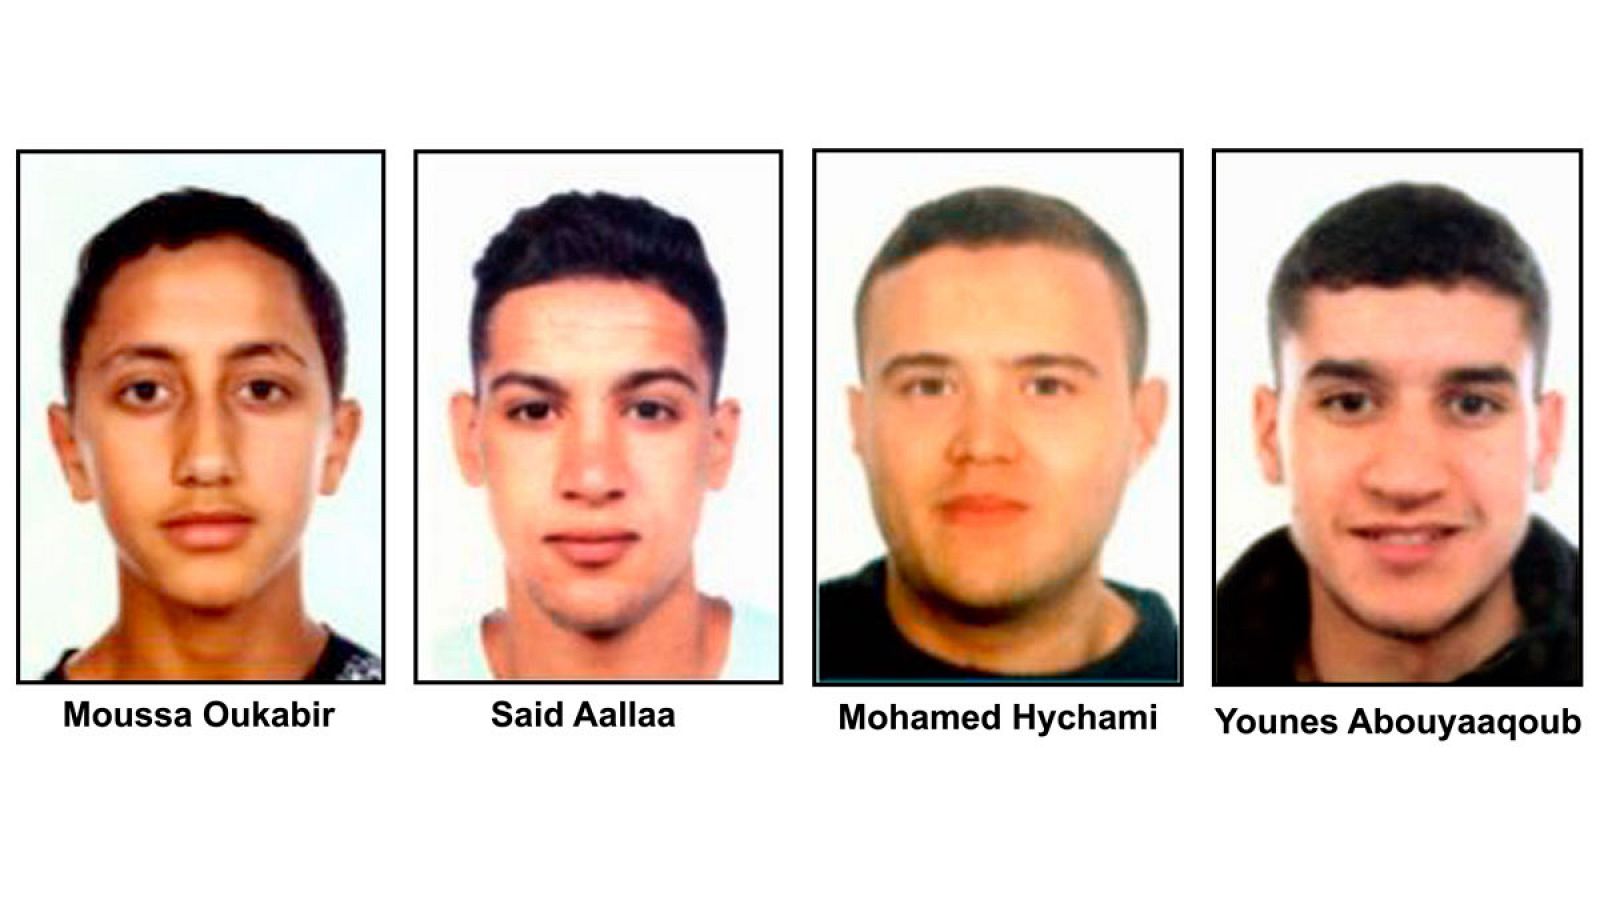 Los cuatro presuntos terroristas de Cataluña buscados, de izquierda a derecha: Moussa Oukabir, Said Aallaa, Mohamed Hychami y Younes Abauyaaqoub